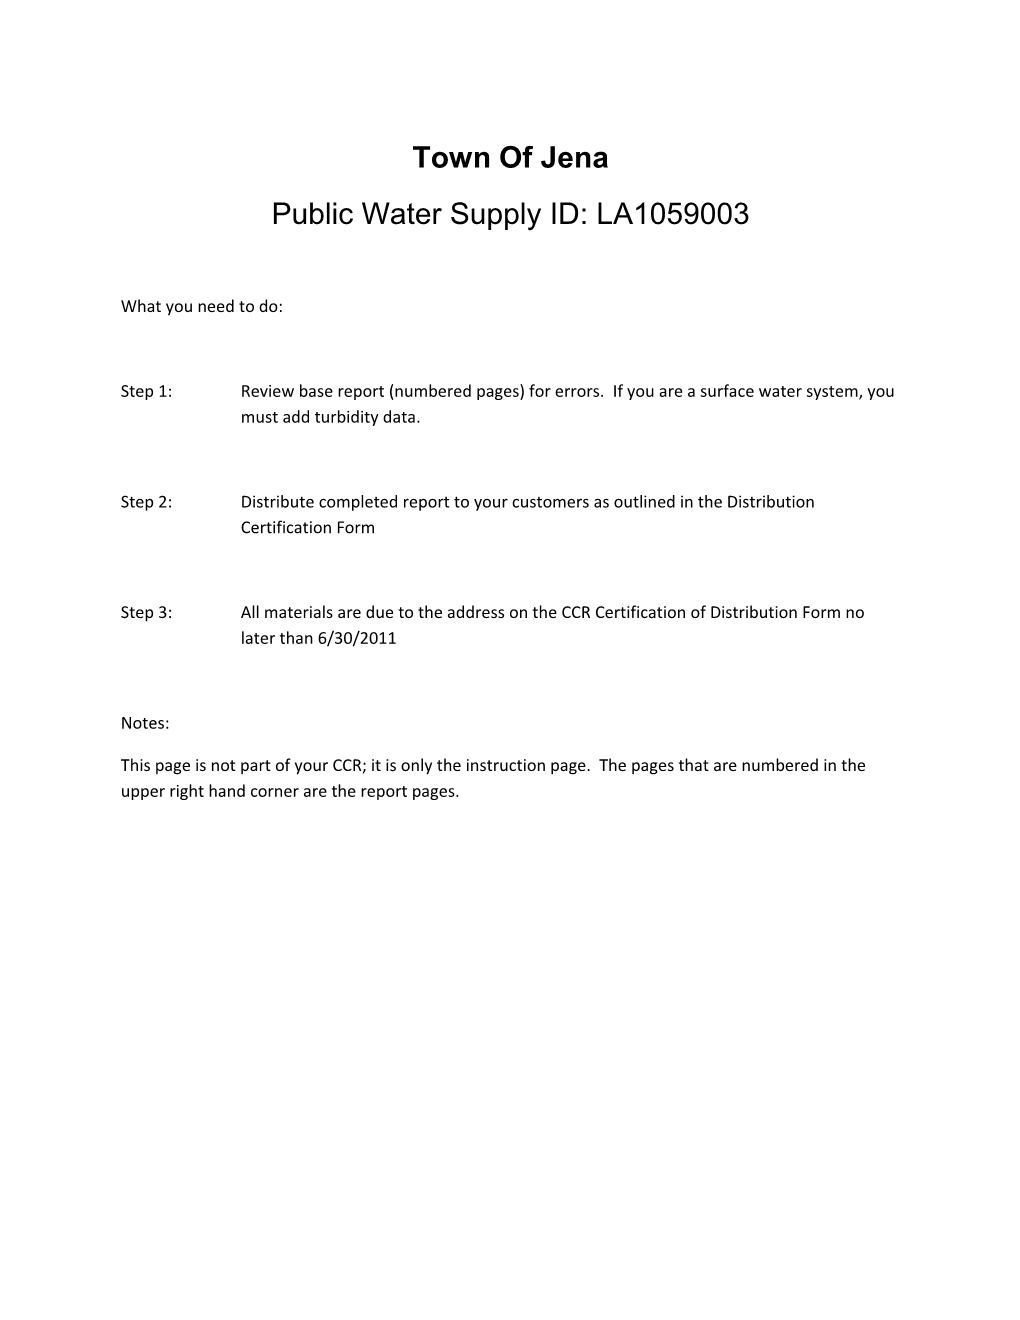 Public Water Supply ID: LA1059003